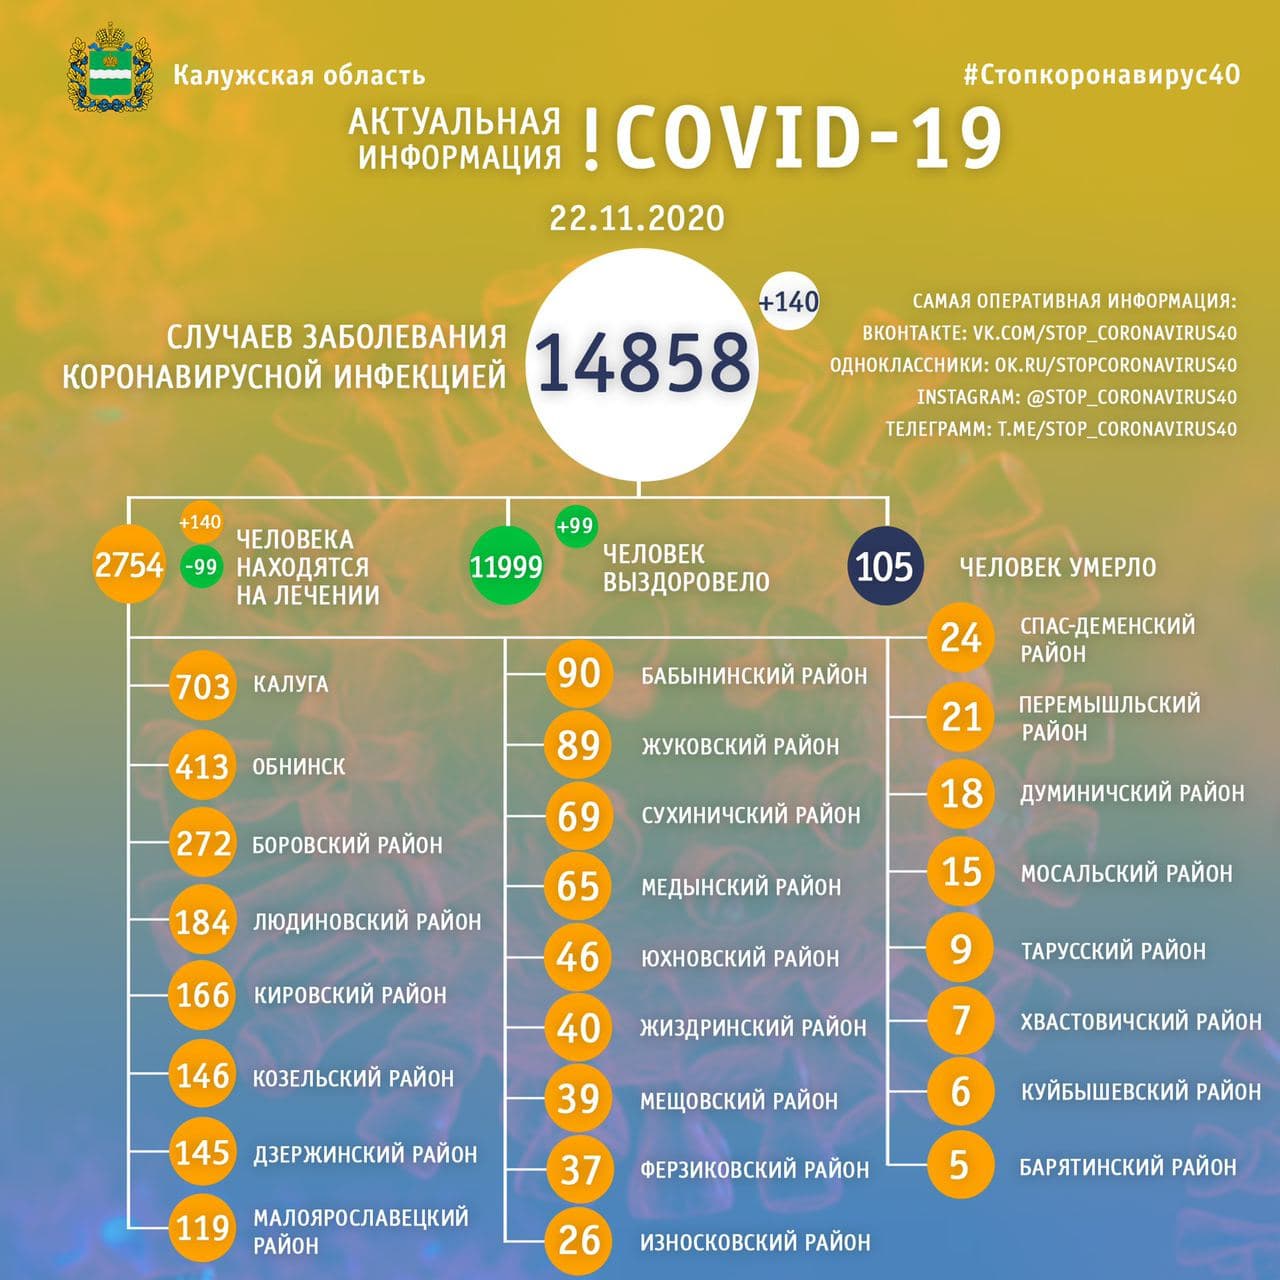 Официальная статистика по коронавирусу в Калужской области на 22 ноября 2020 года.